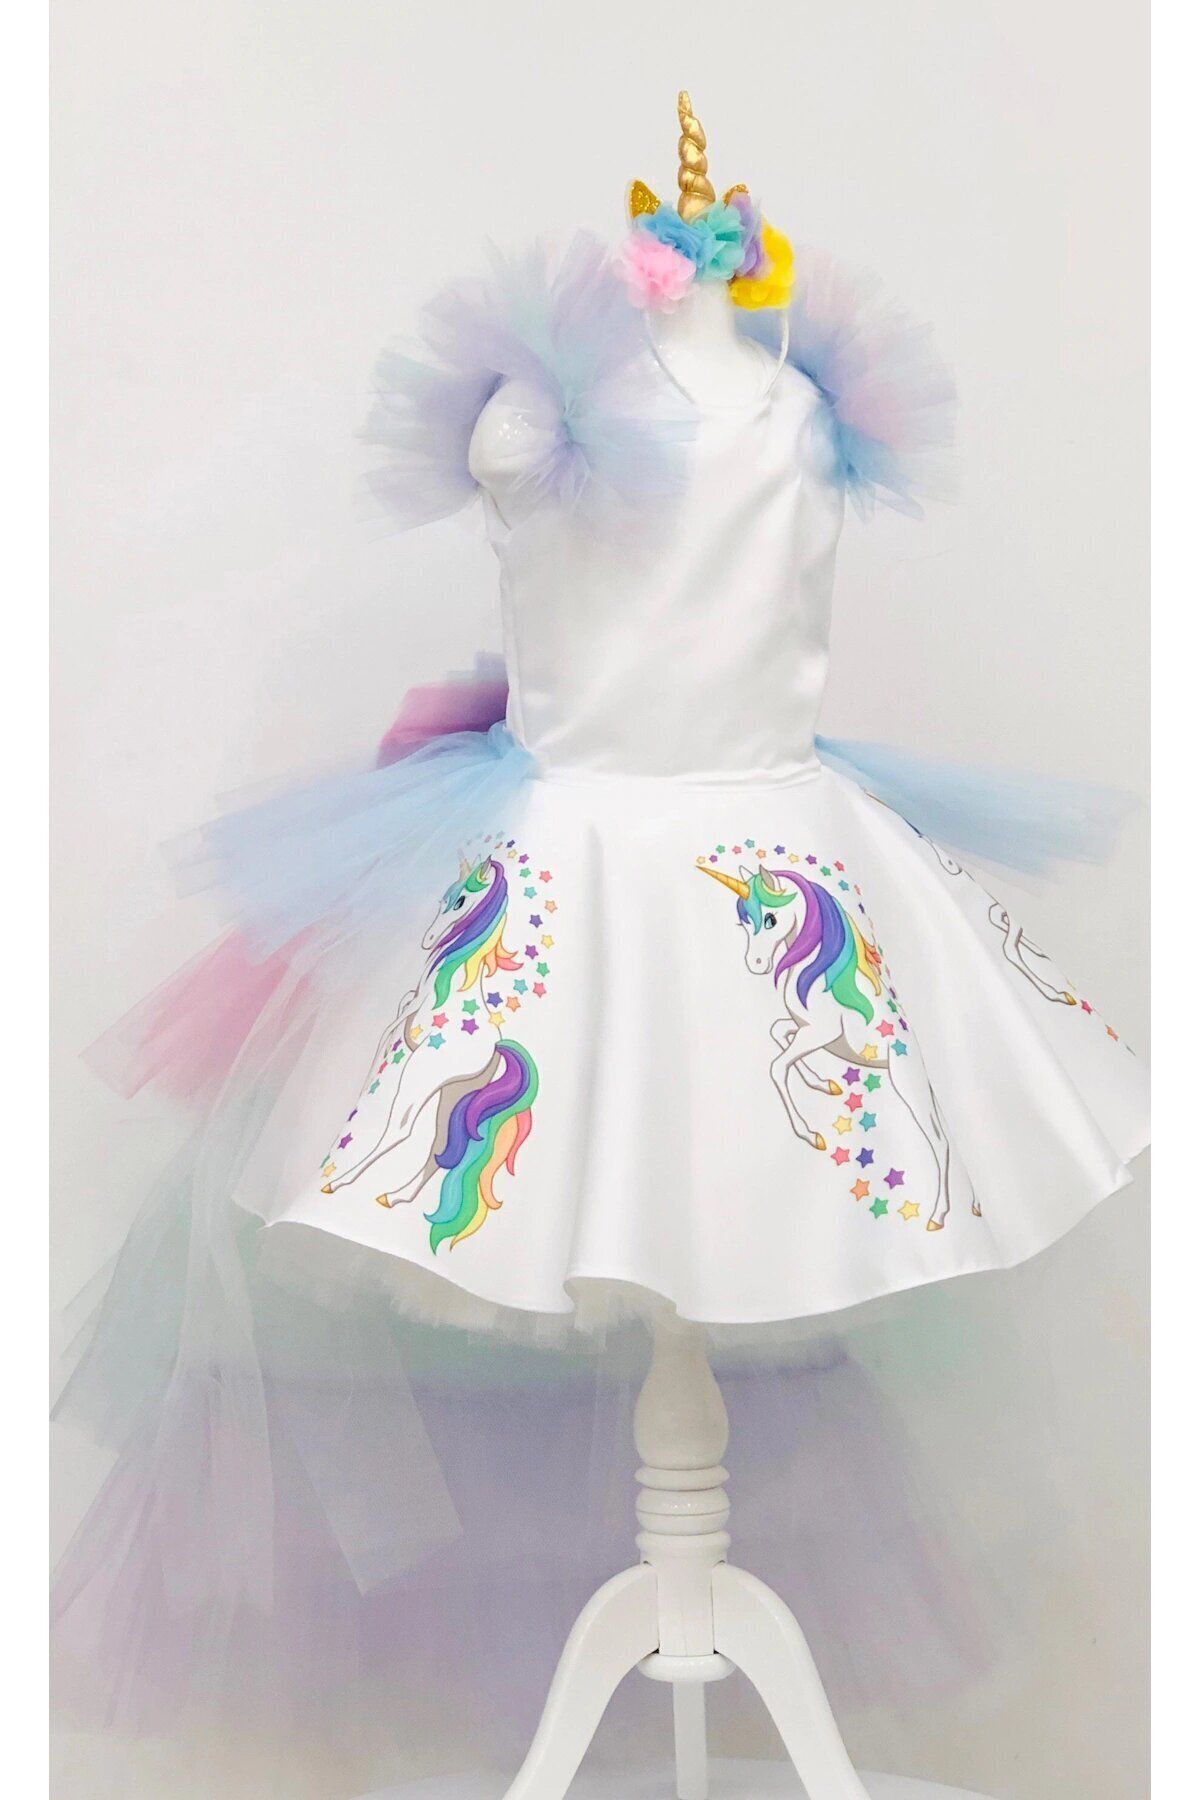 YAĞMUR KOStütüM Unicorn Baskılı My Little Pony Kız Çocuk Doğum Günü Elbise Kostüm